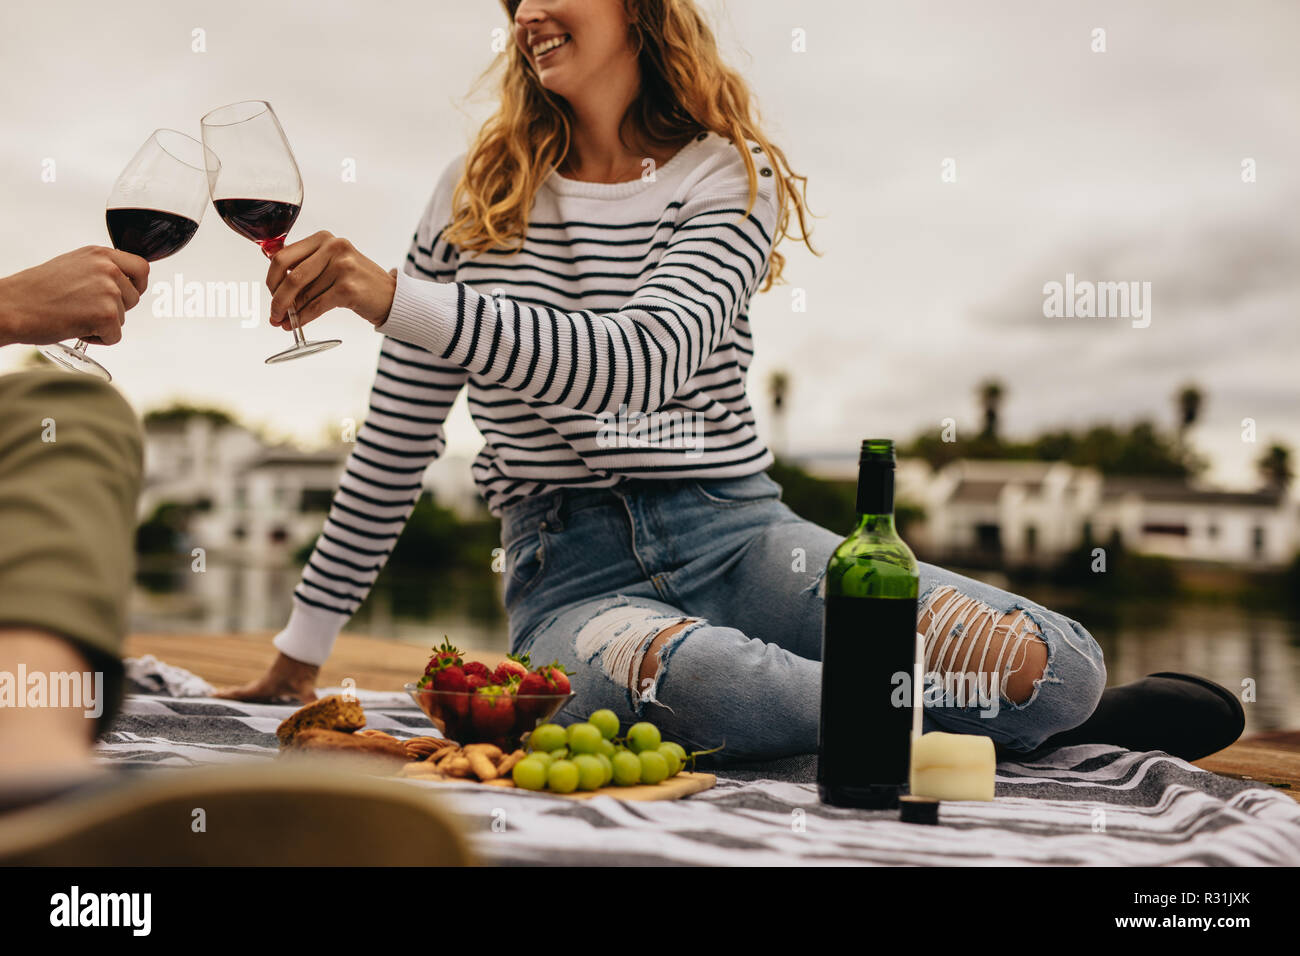 Paar auf ein Datum an einem See Essen, Snacks und Wein zu trinken. Junge Frau sitzt mit ihrem Freund Wein trinken auf ein Datum. Stockfoto